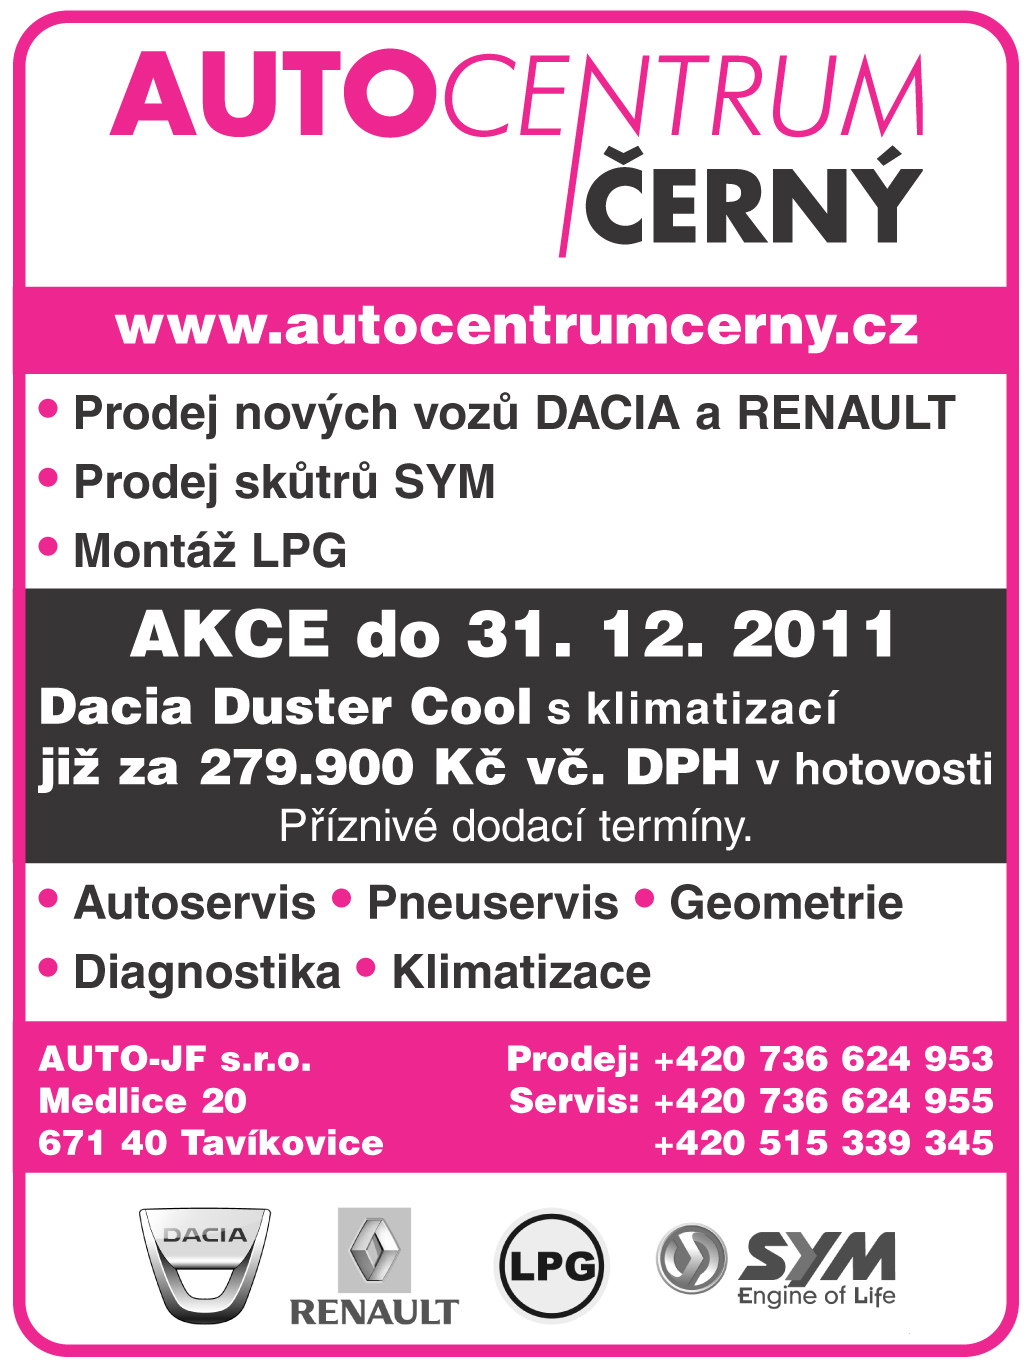 Prodej vozů Dacia, Renault,SYM,Znojmo, Moravský Krumlov, Miroslav